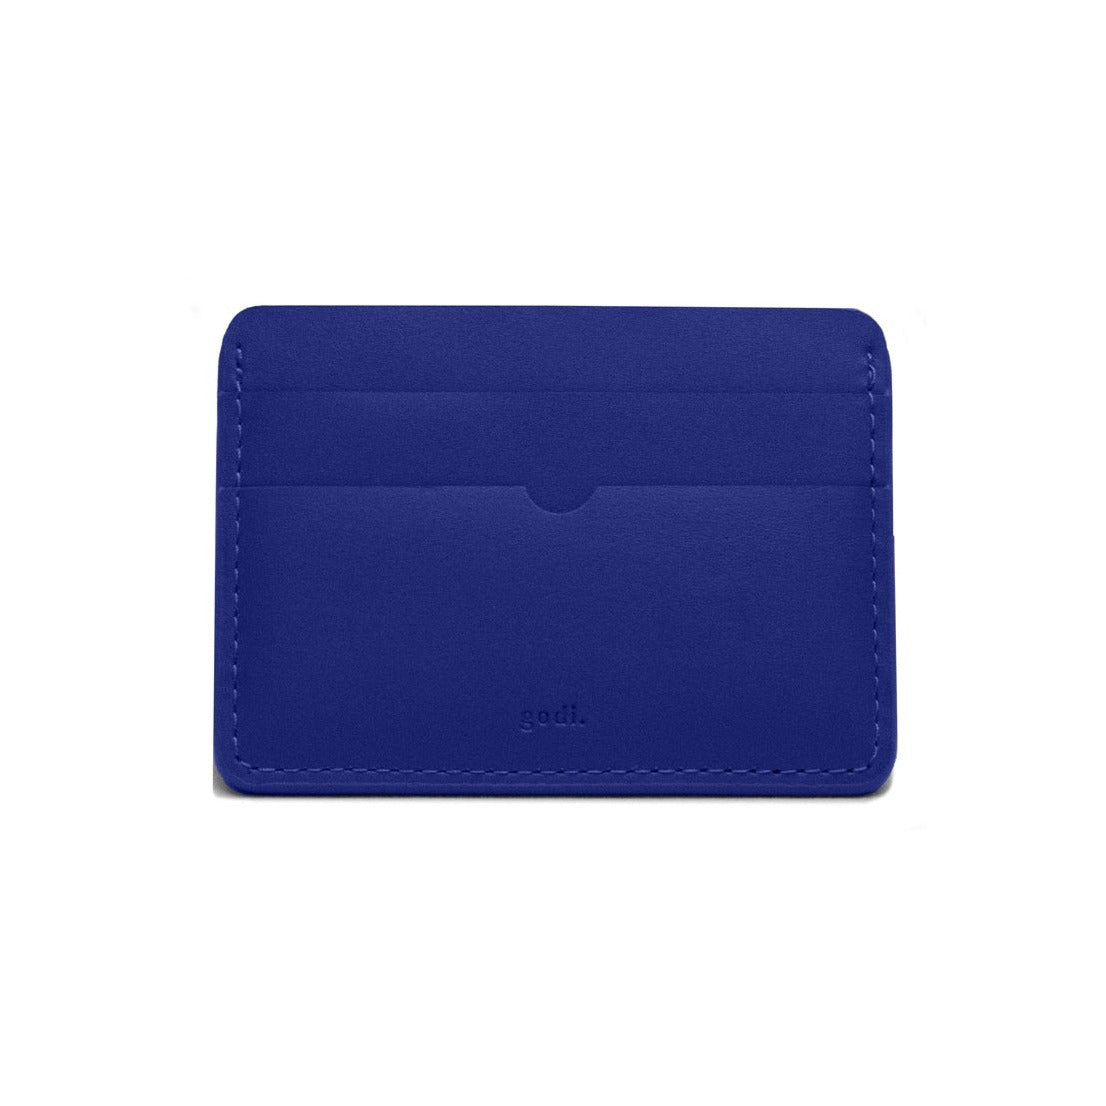 Card Case in Cobalt Blue